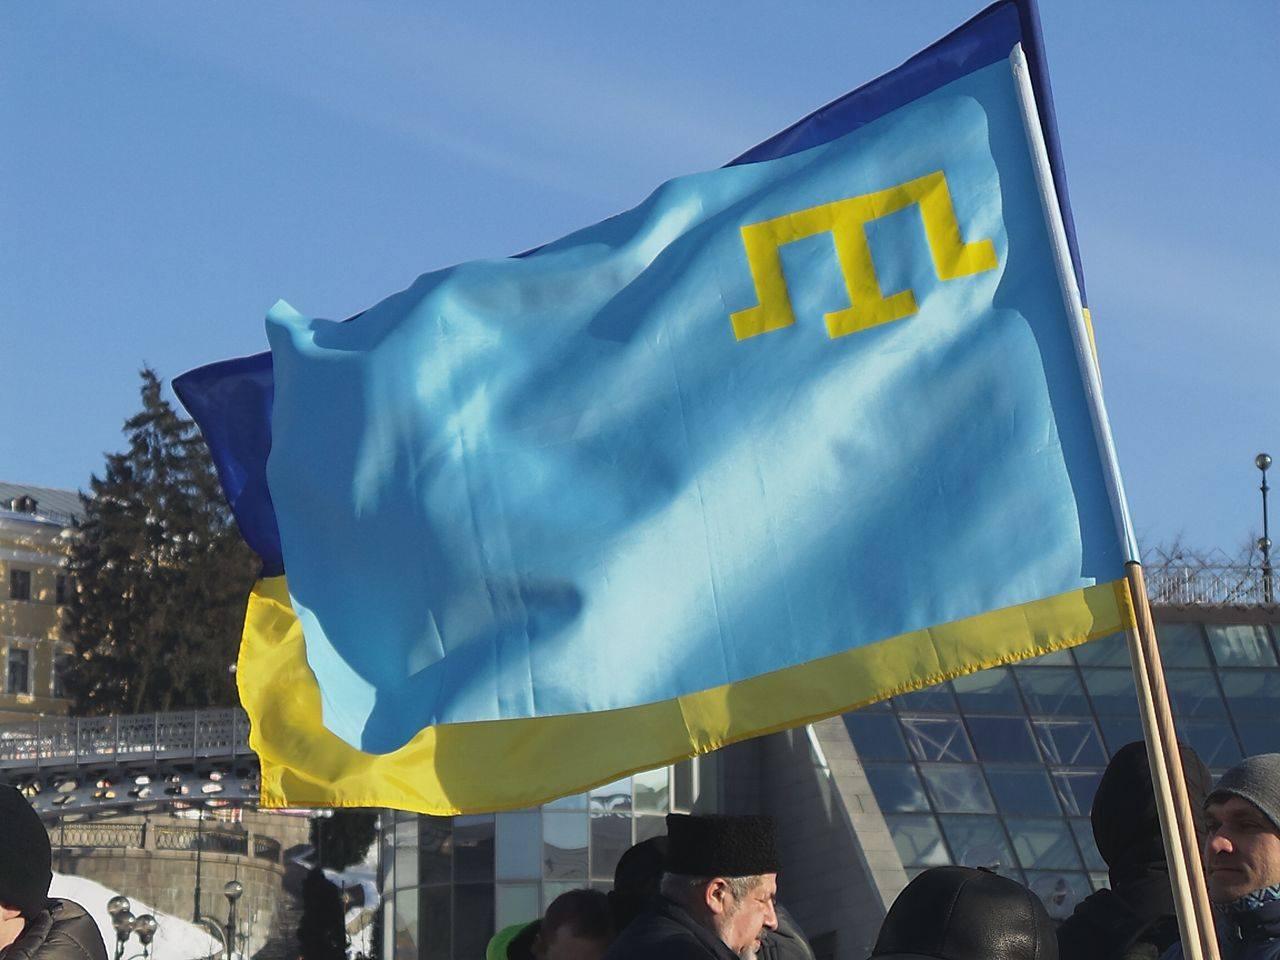 День кримськотатарського прапора: історія, символізм, стяг у часи СРСР, депортації та окупації